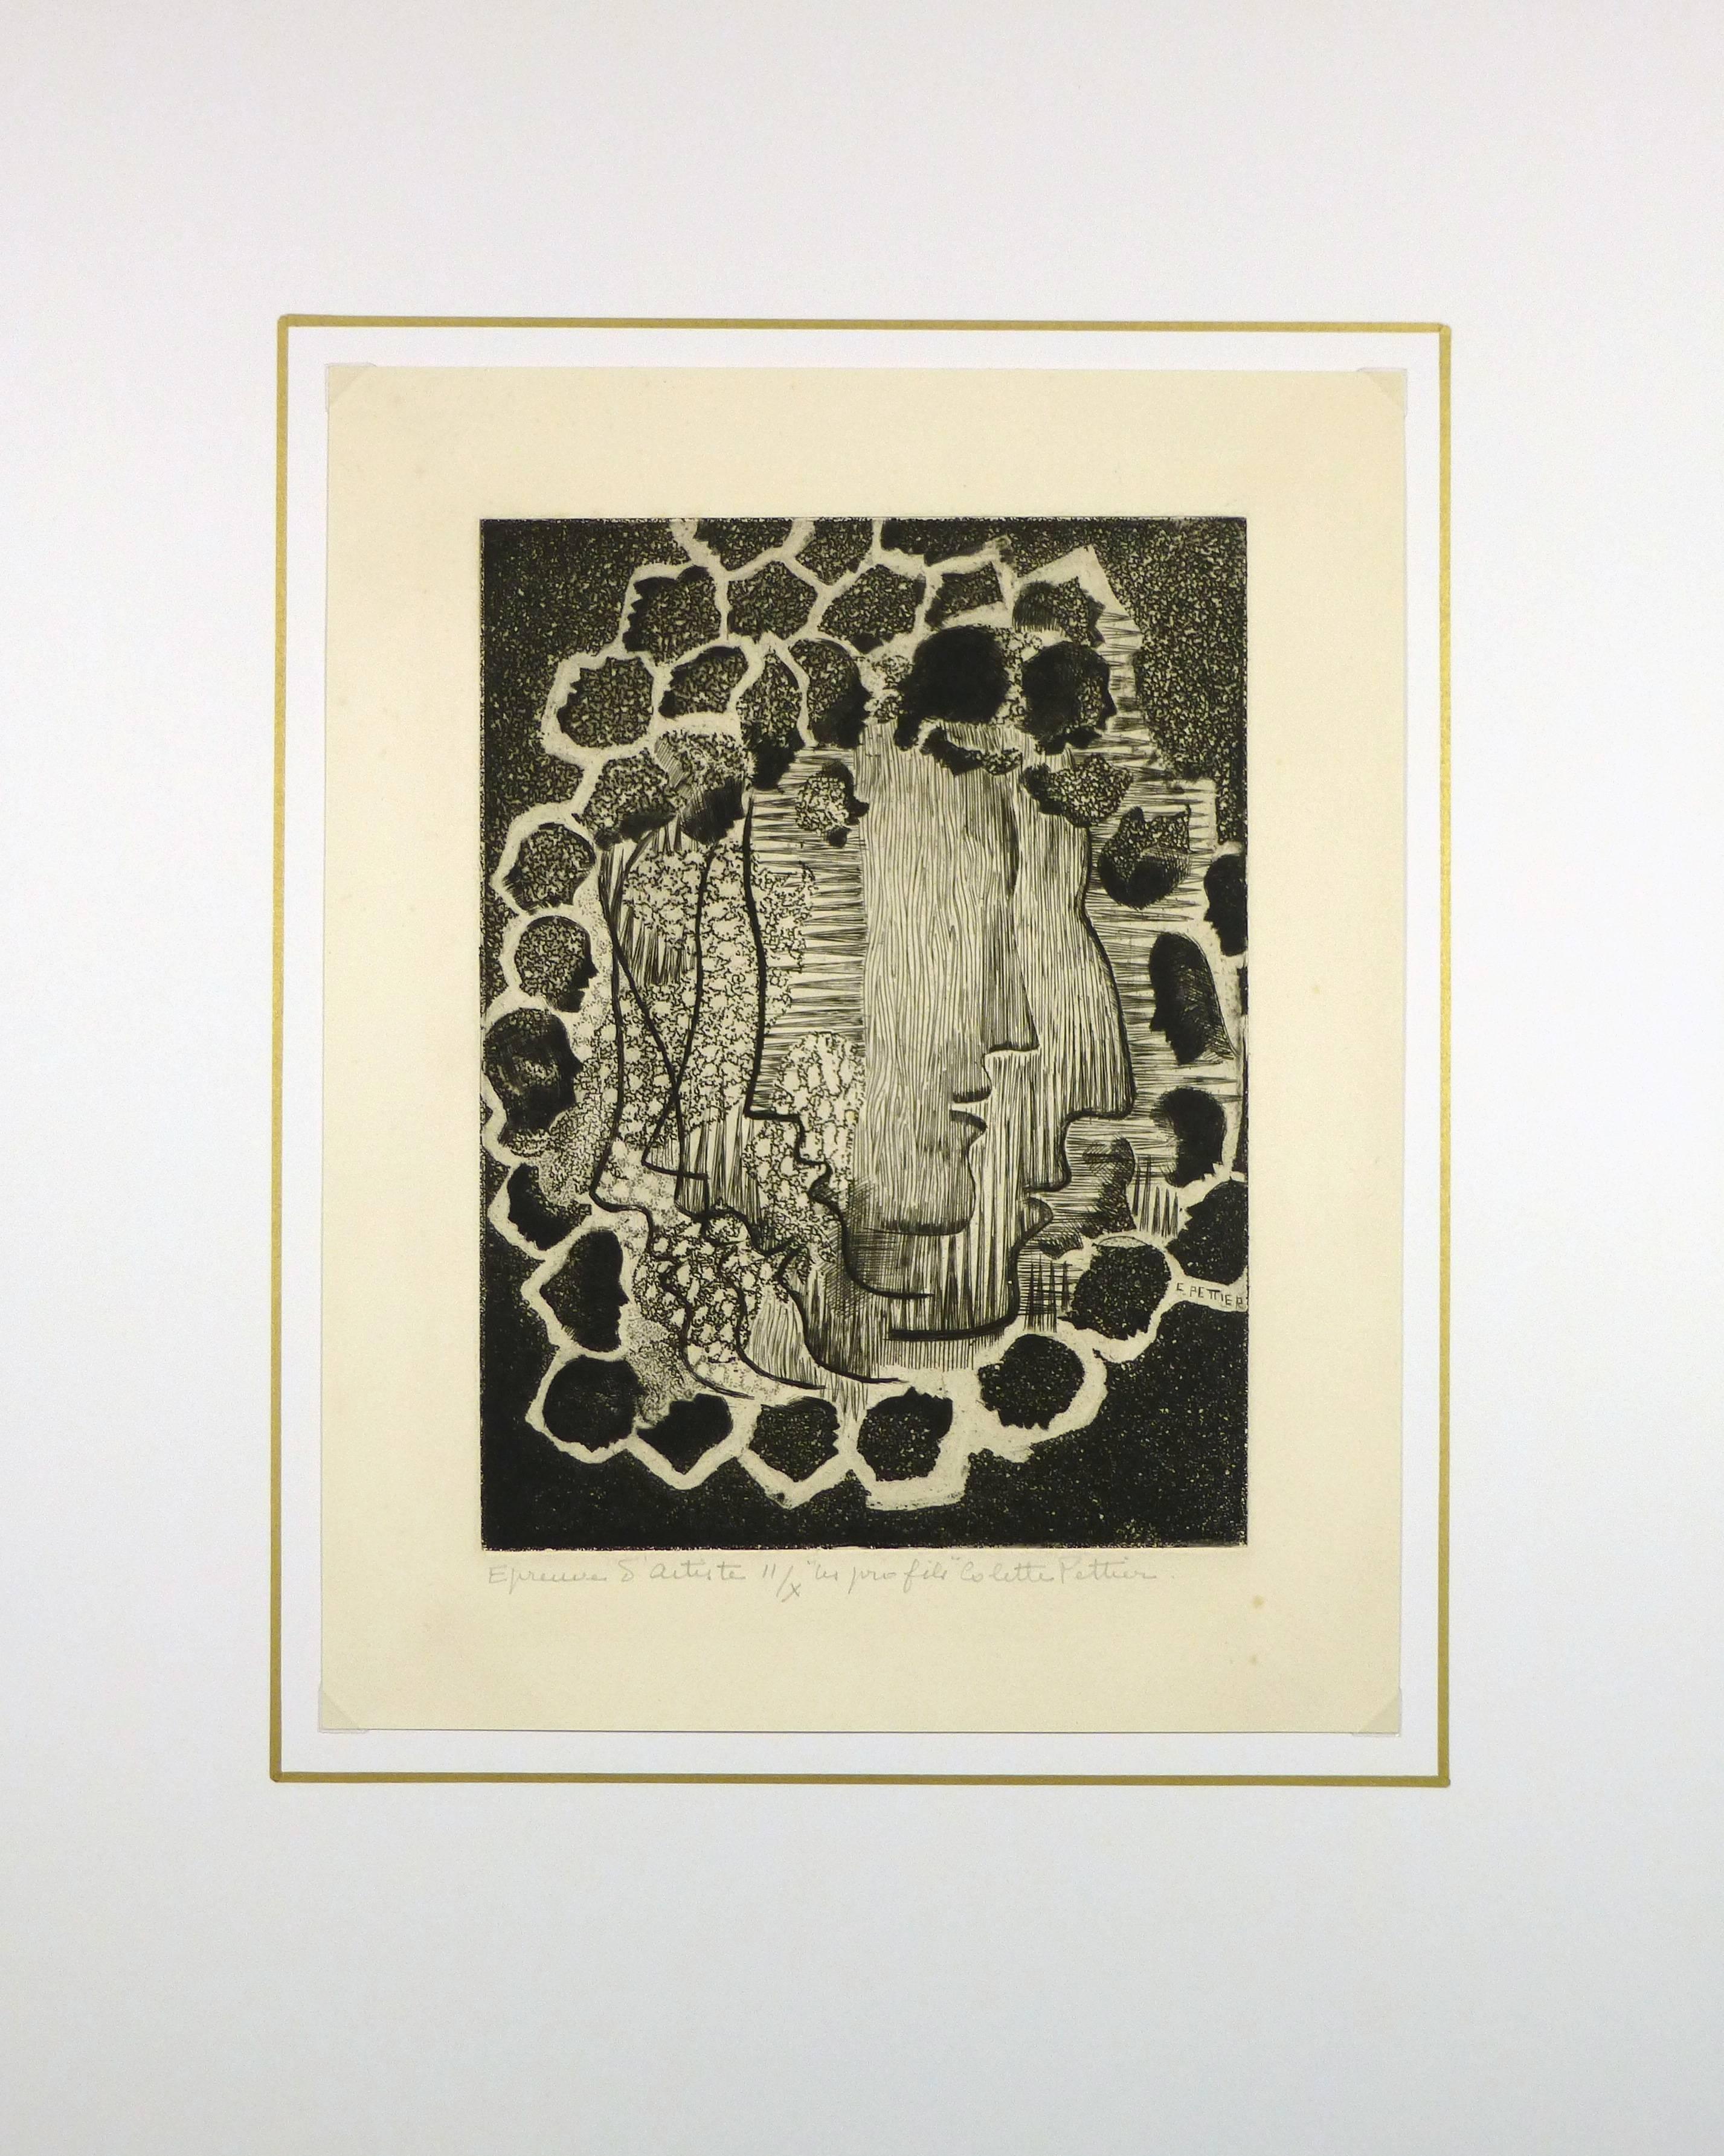 Dramatische Radierung aus der Mitte des Jahrhunderts mit übereinander geschichteten Profilen der französischen Künstlerin Collette Pettier, 1965. Signiert unten rechts.

Originalkunstwerk auf Papier auf einem weißen Passepartout mit Goldrand.